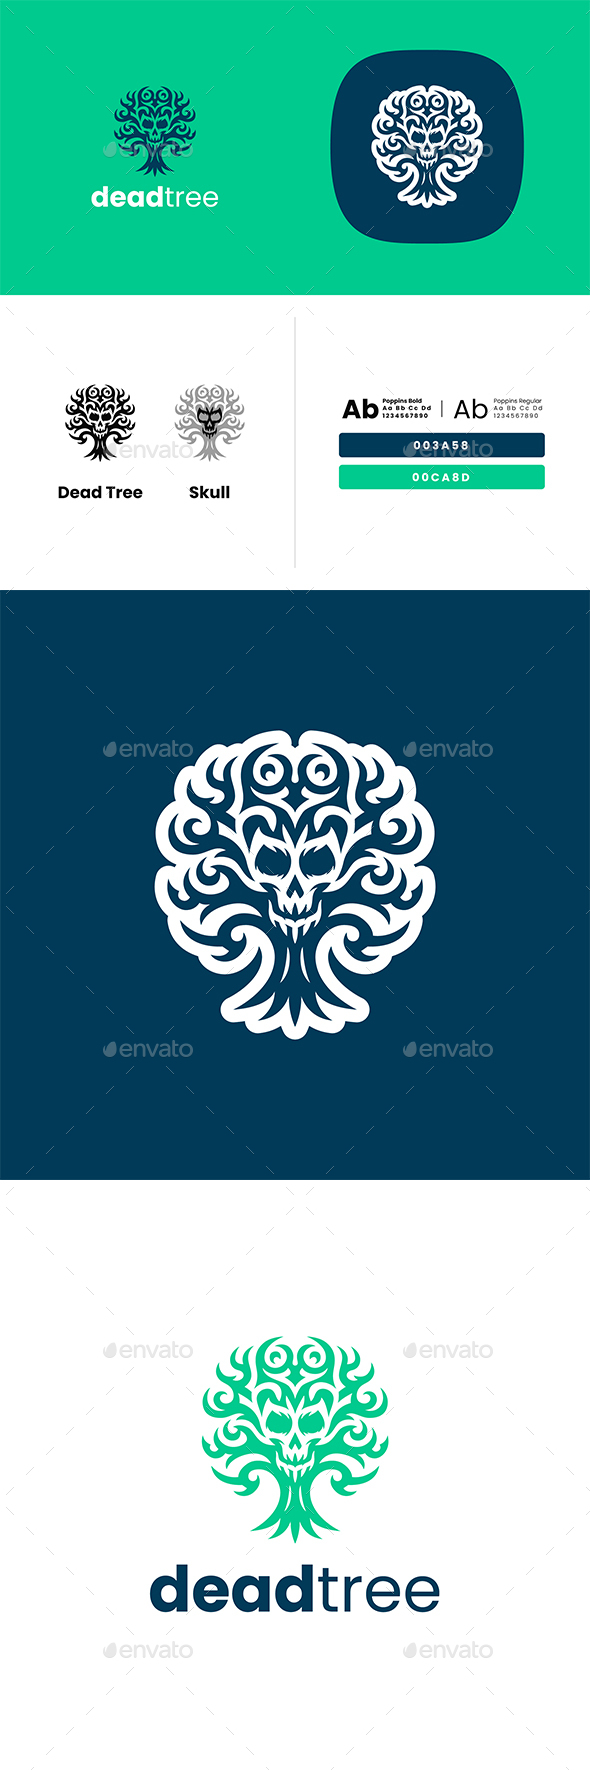 [DOWNLOAD]Dead Tree Skull Logo Design